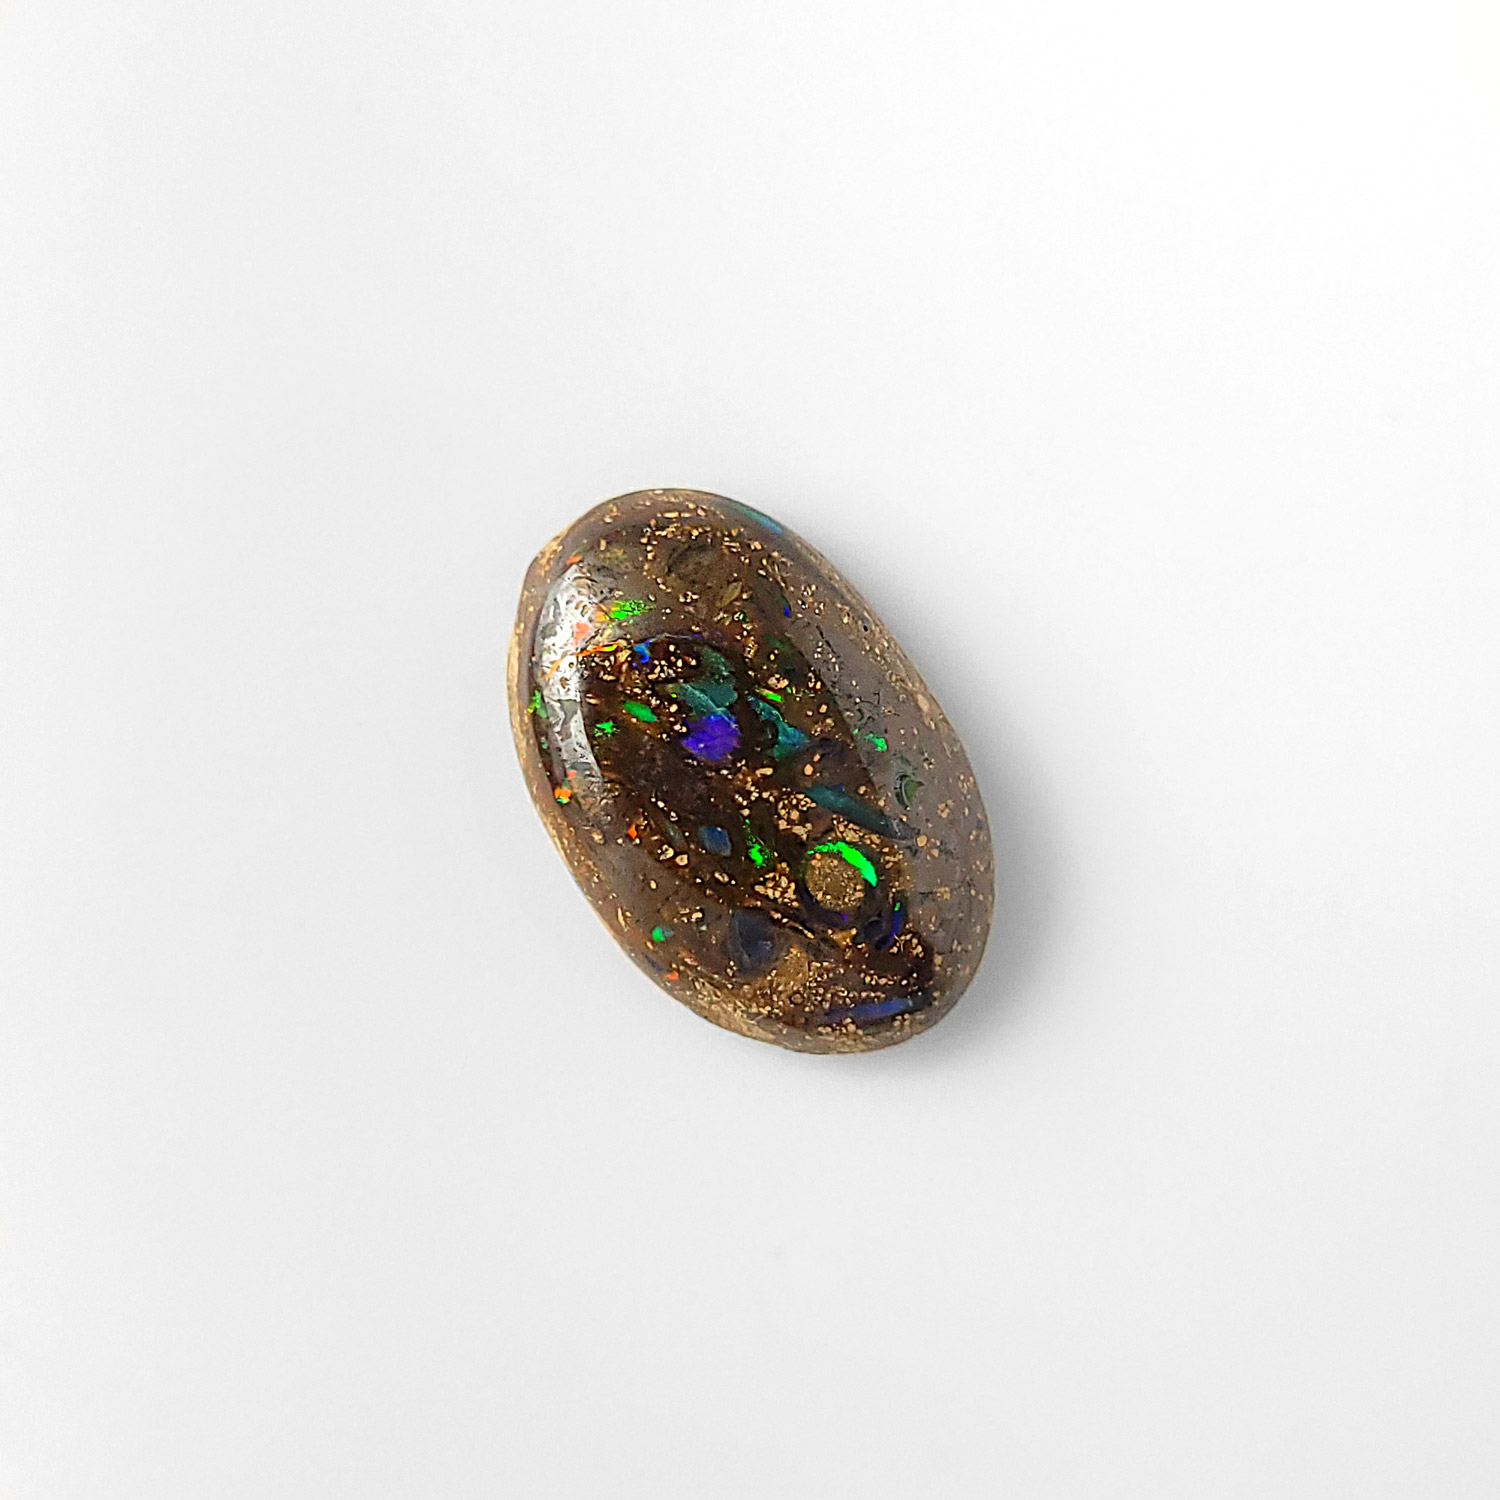 Dieser Edelstein ist ein matrix opal cabochon